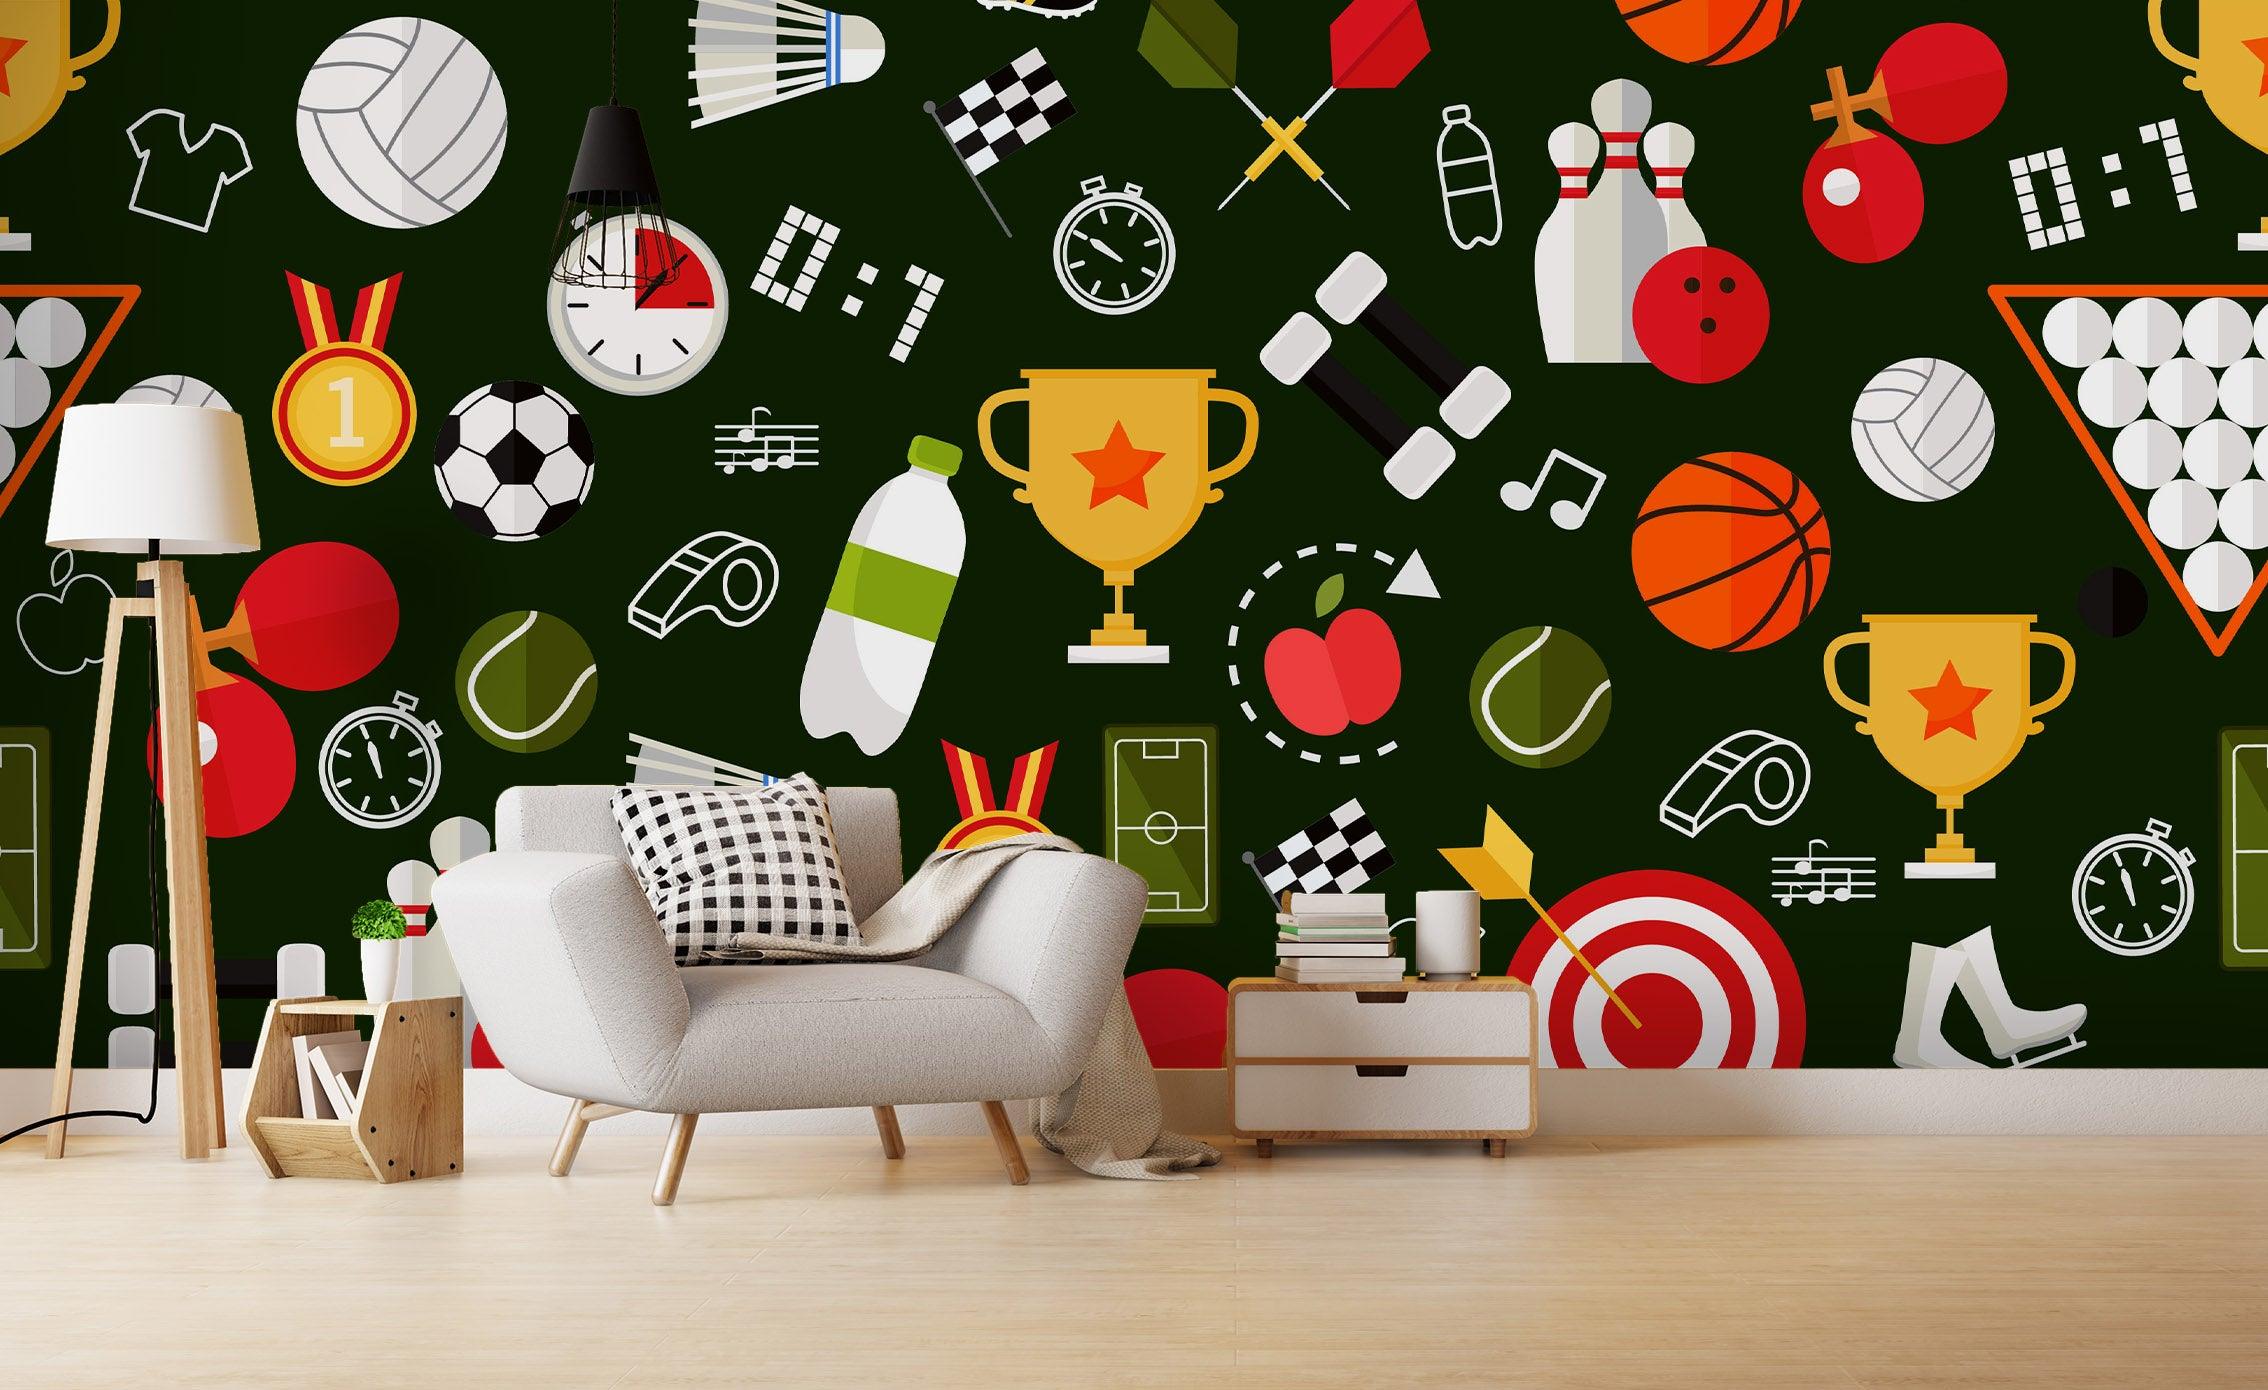 3D Cartoon Ball Games Wall Mural Wallpaper 52- Jess Art Decoration